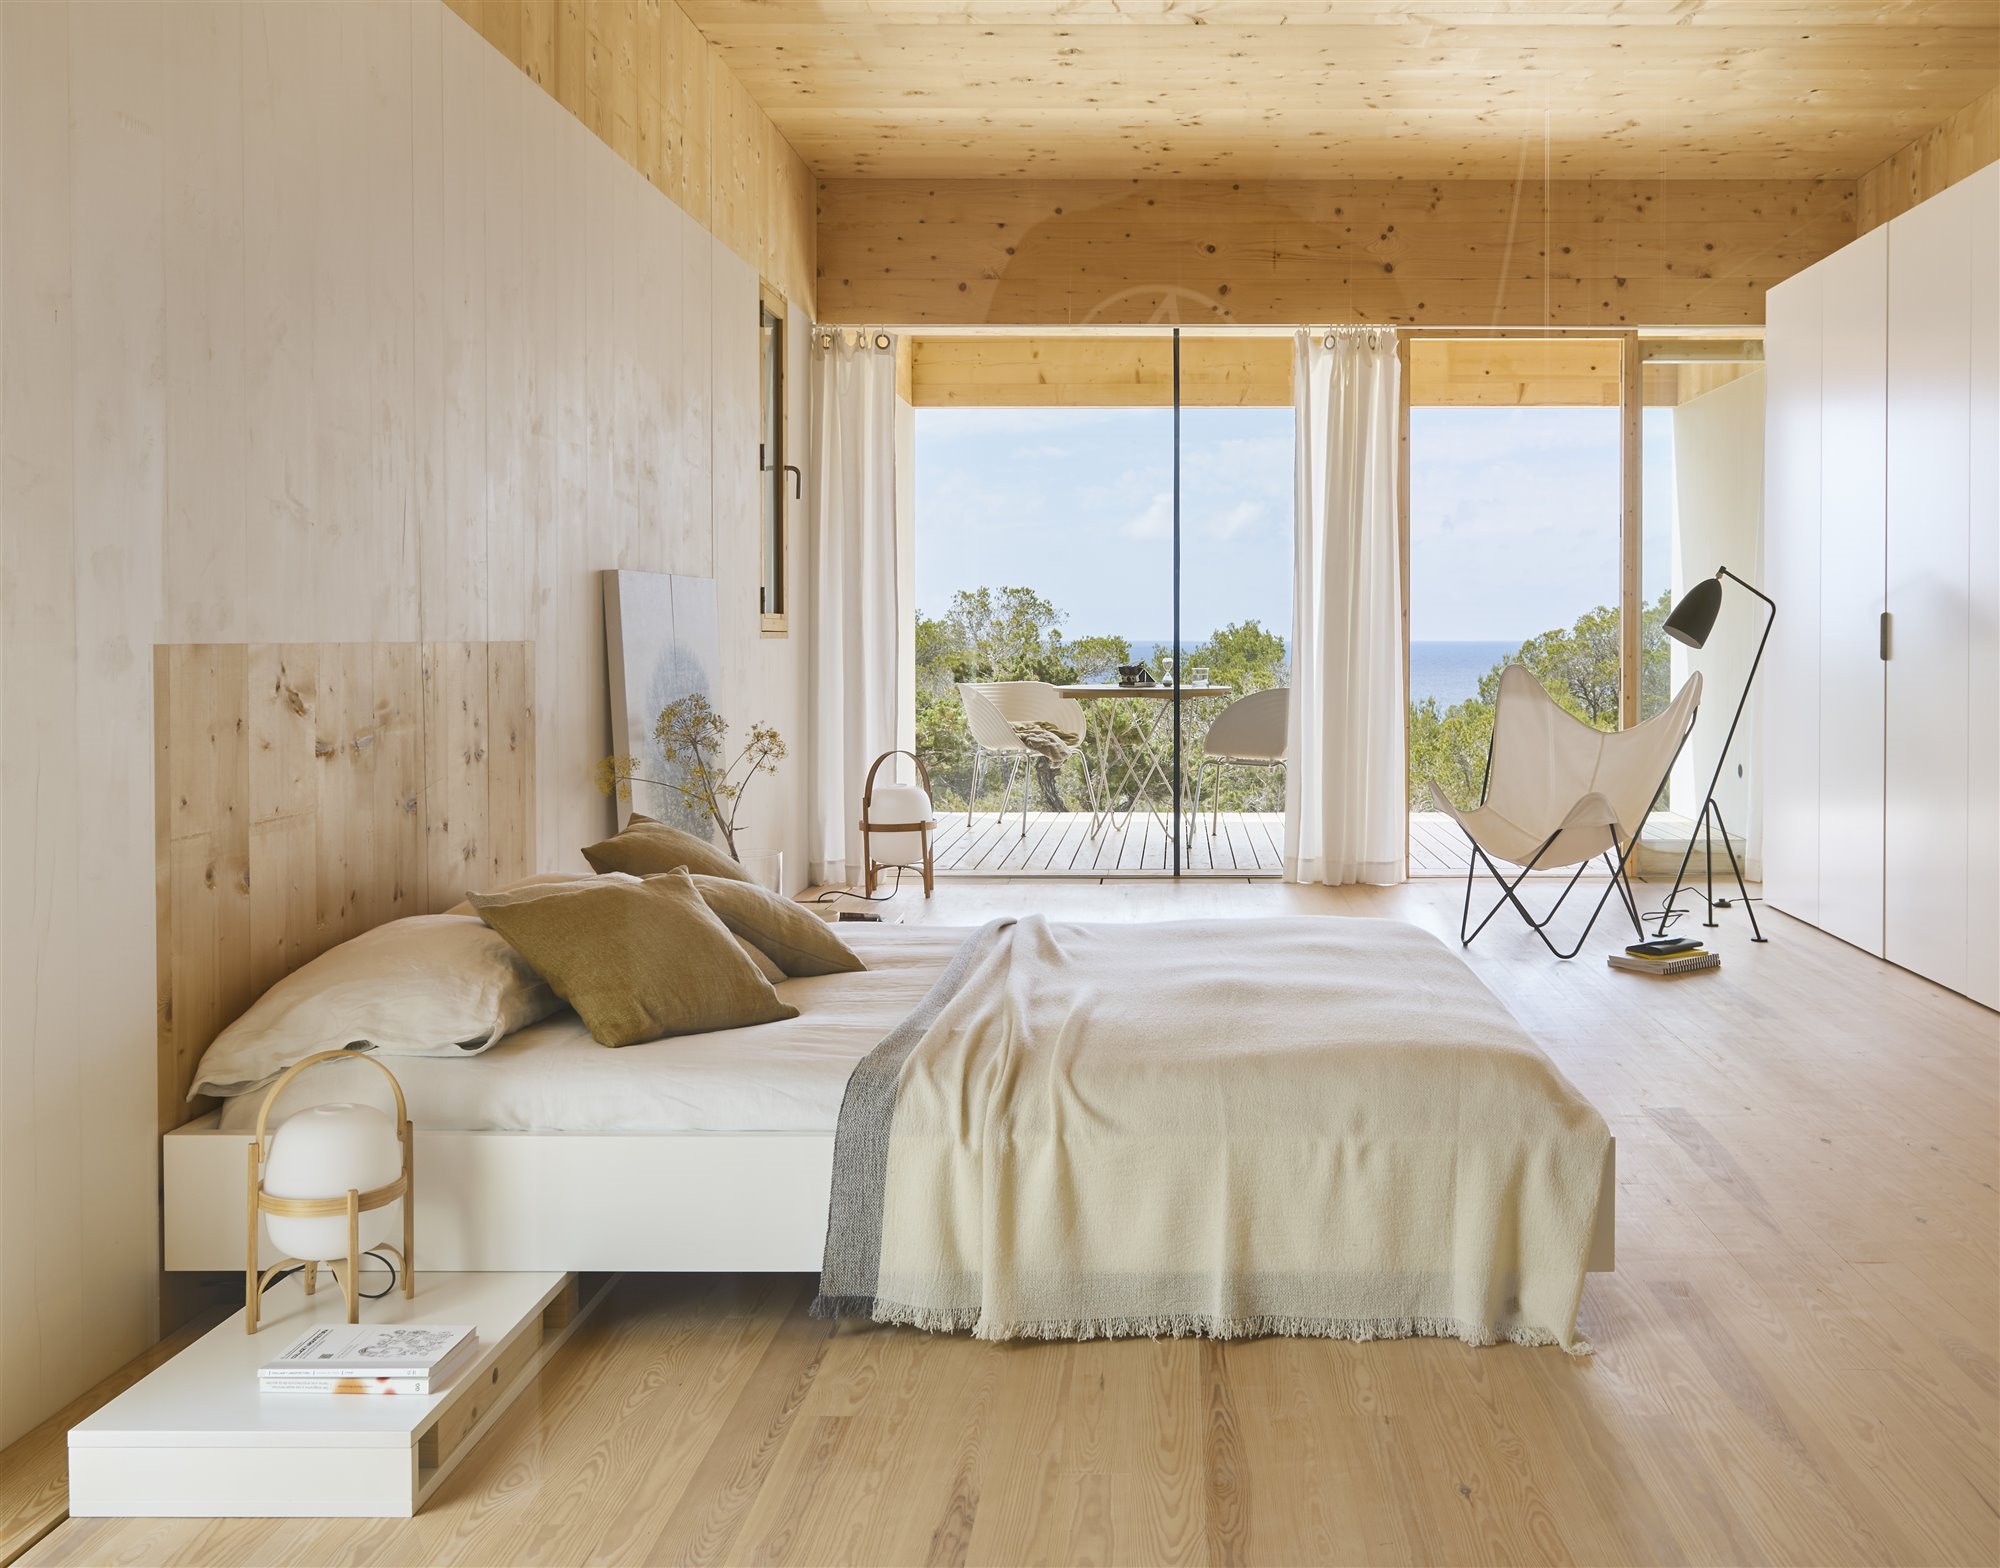 Dormitorio con balcon de madera 